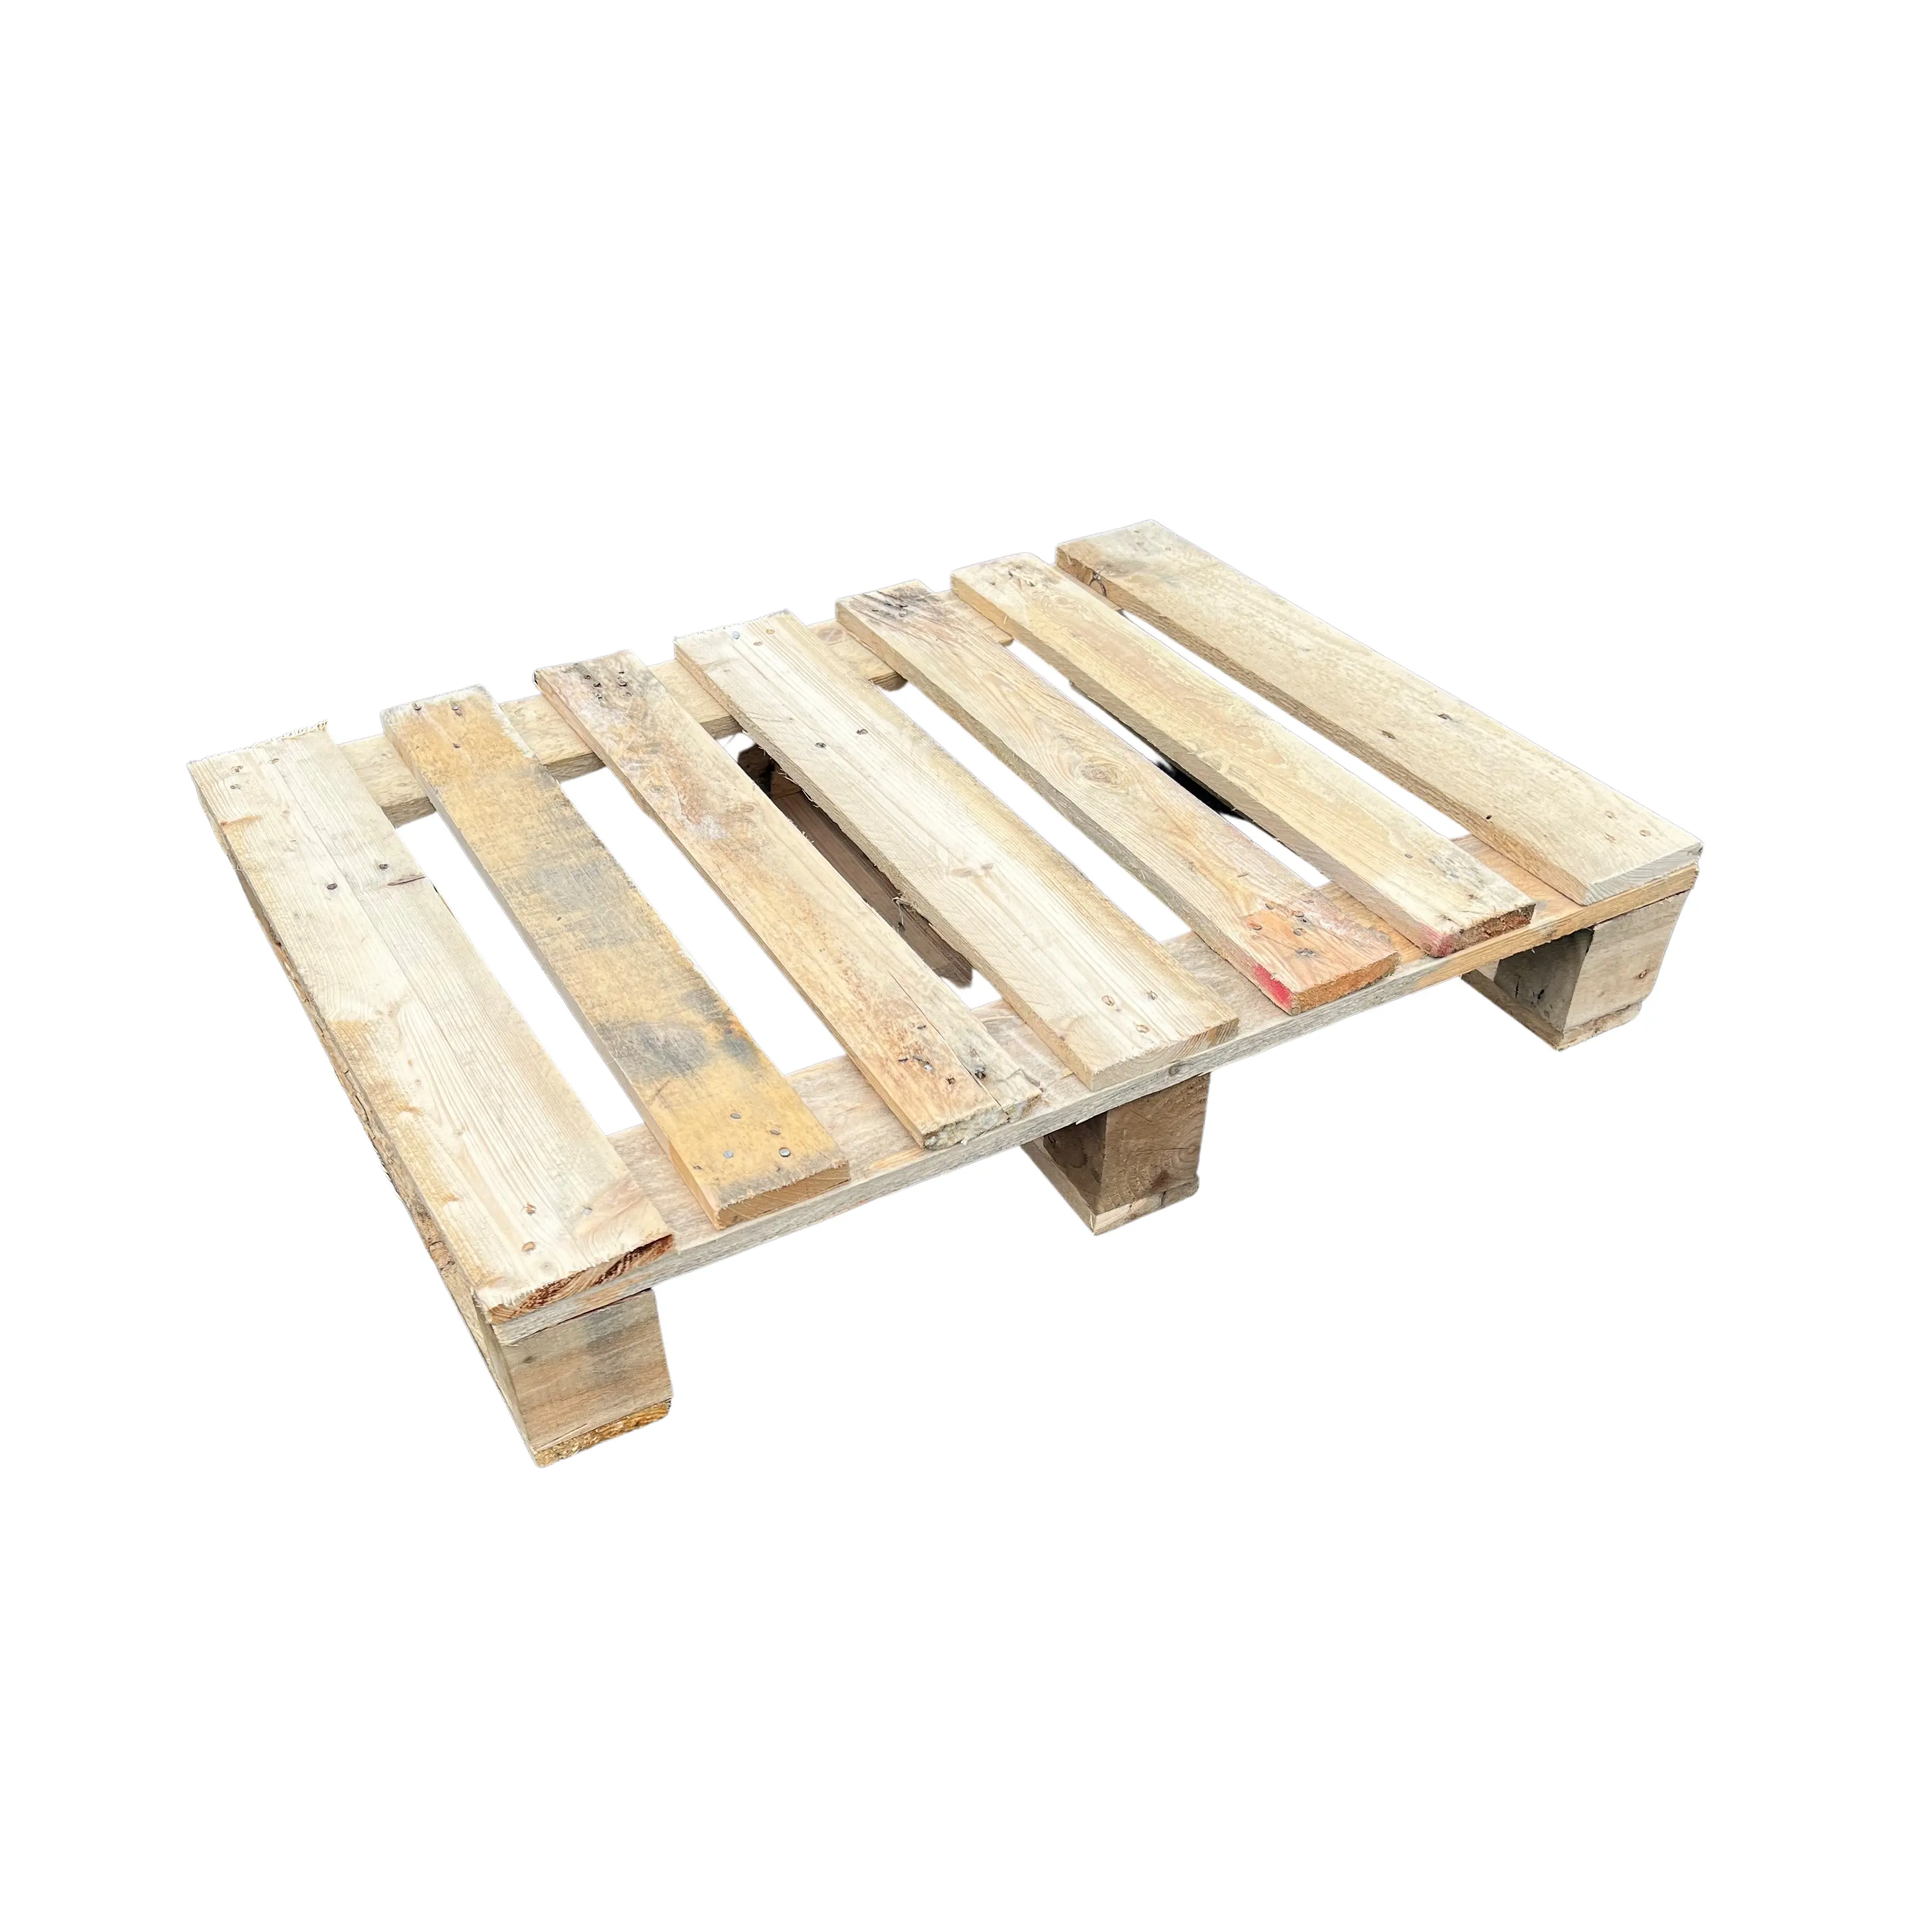 फैक्टरी मूल्य यूरो ईपीएएल लकड़ी के फूस फैक्टरी बिक्री के लिए यूरो ईपीएएल लकड़ी के फूस की आपूर्ति करती है